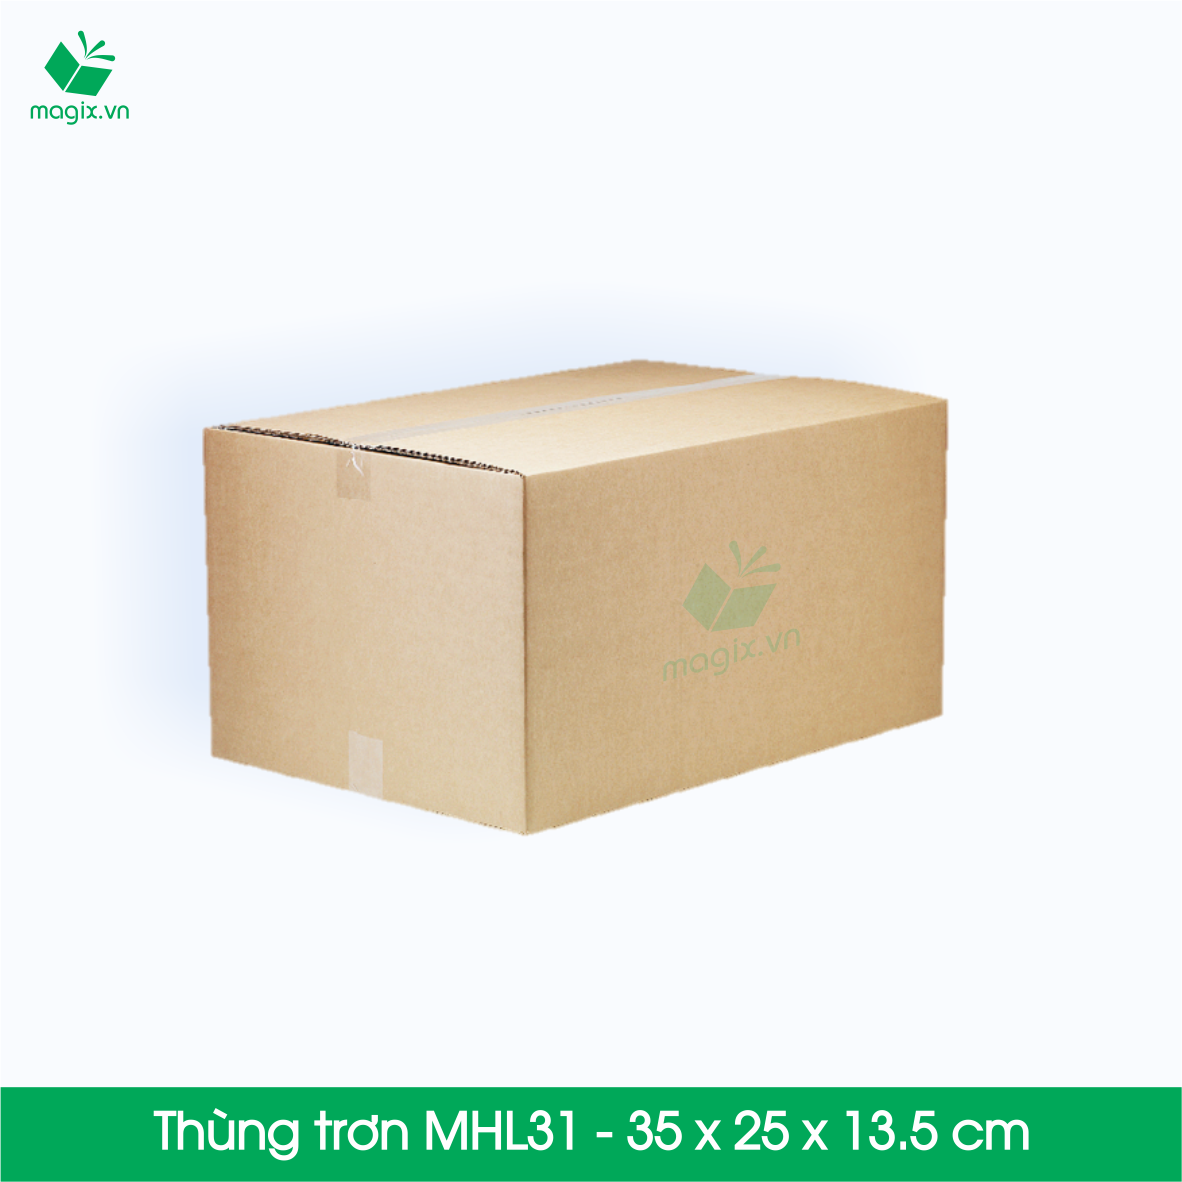 20 Thùng hộp carton - Mã MHL31 - Kích thước 35x25x13.5 cm